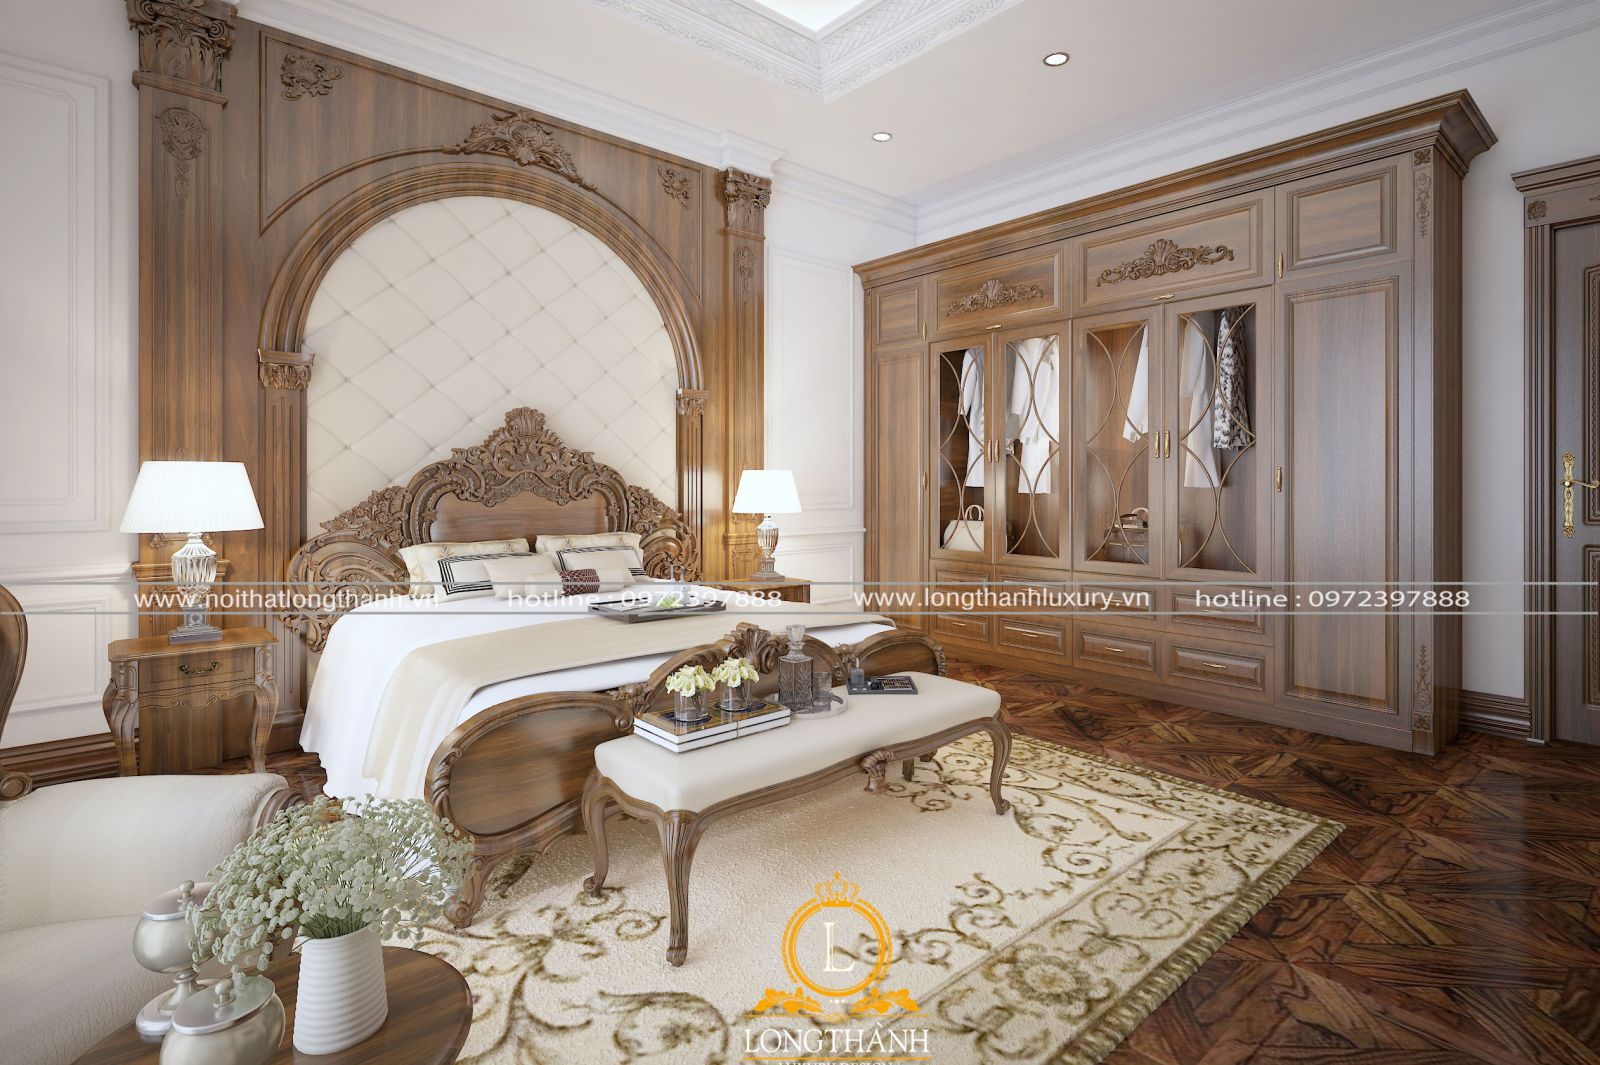 Một chiếc giường ngủ bằng gỗ tự nhiên có hương thơm tự nhiên